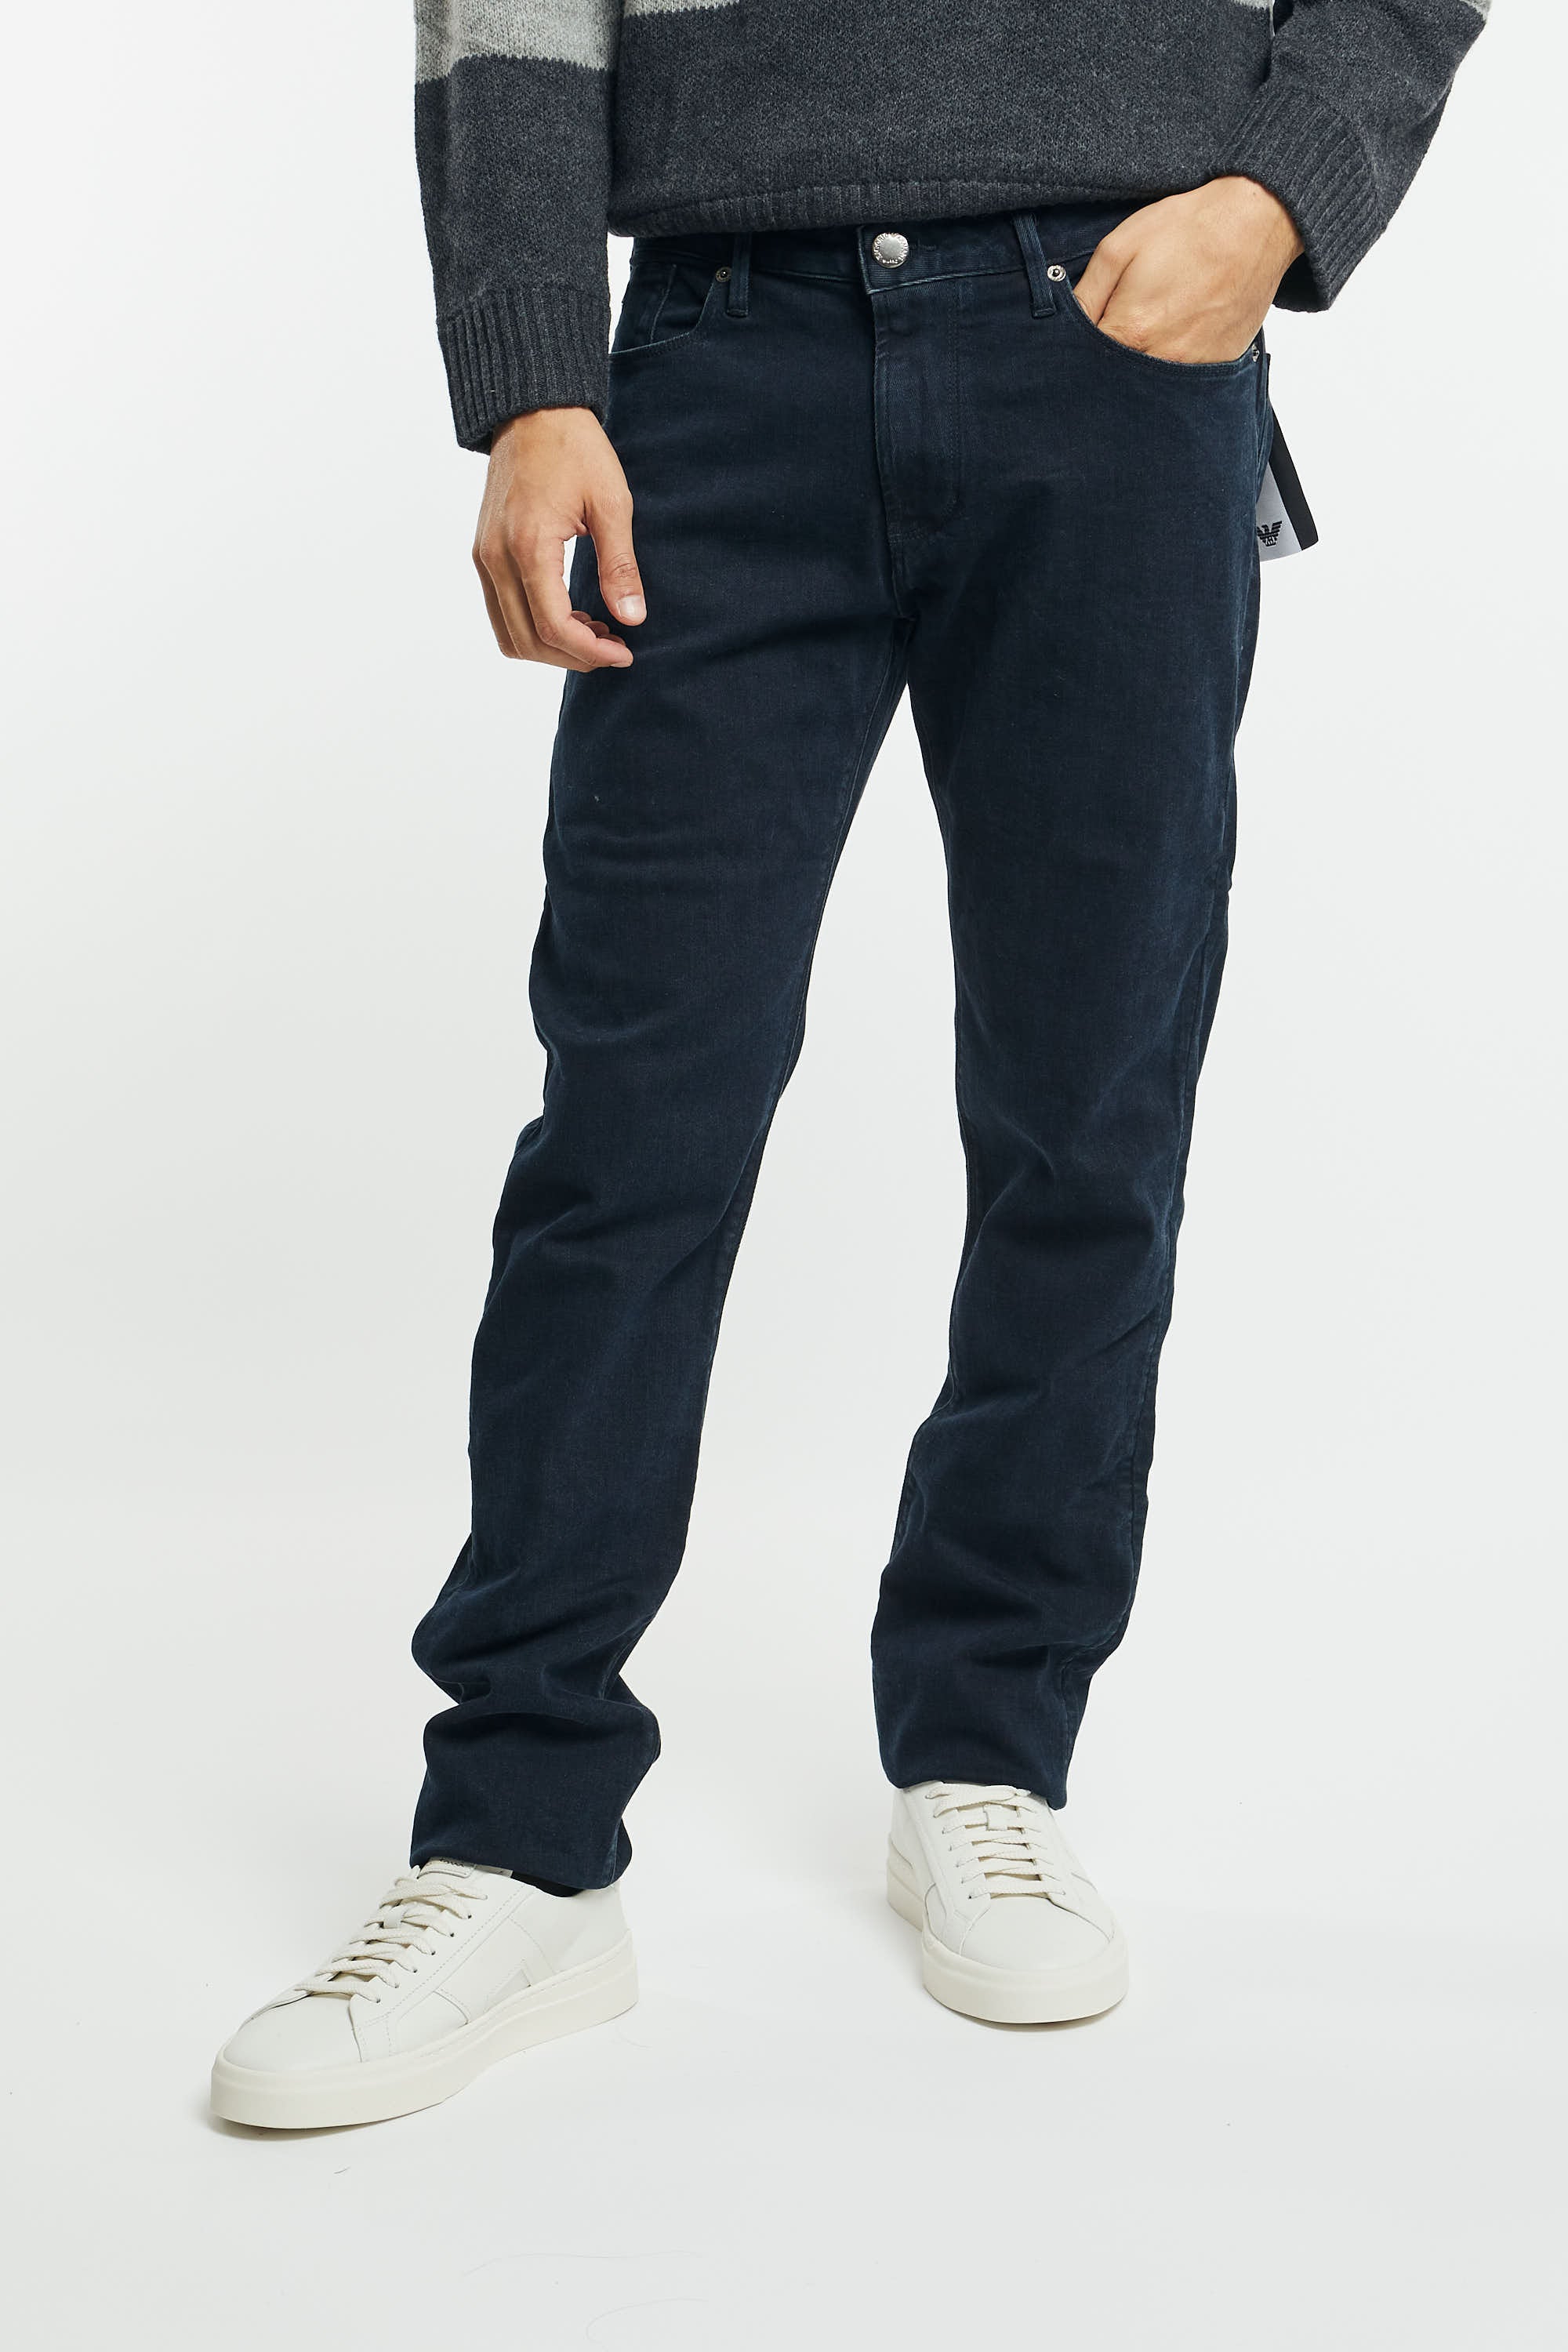 Jeans J06 slim fit in twill comfort denim-4